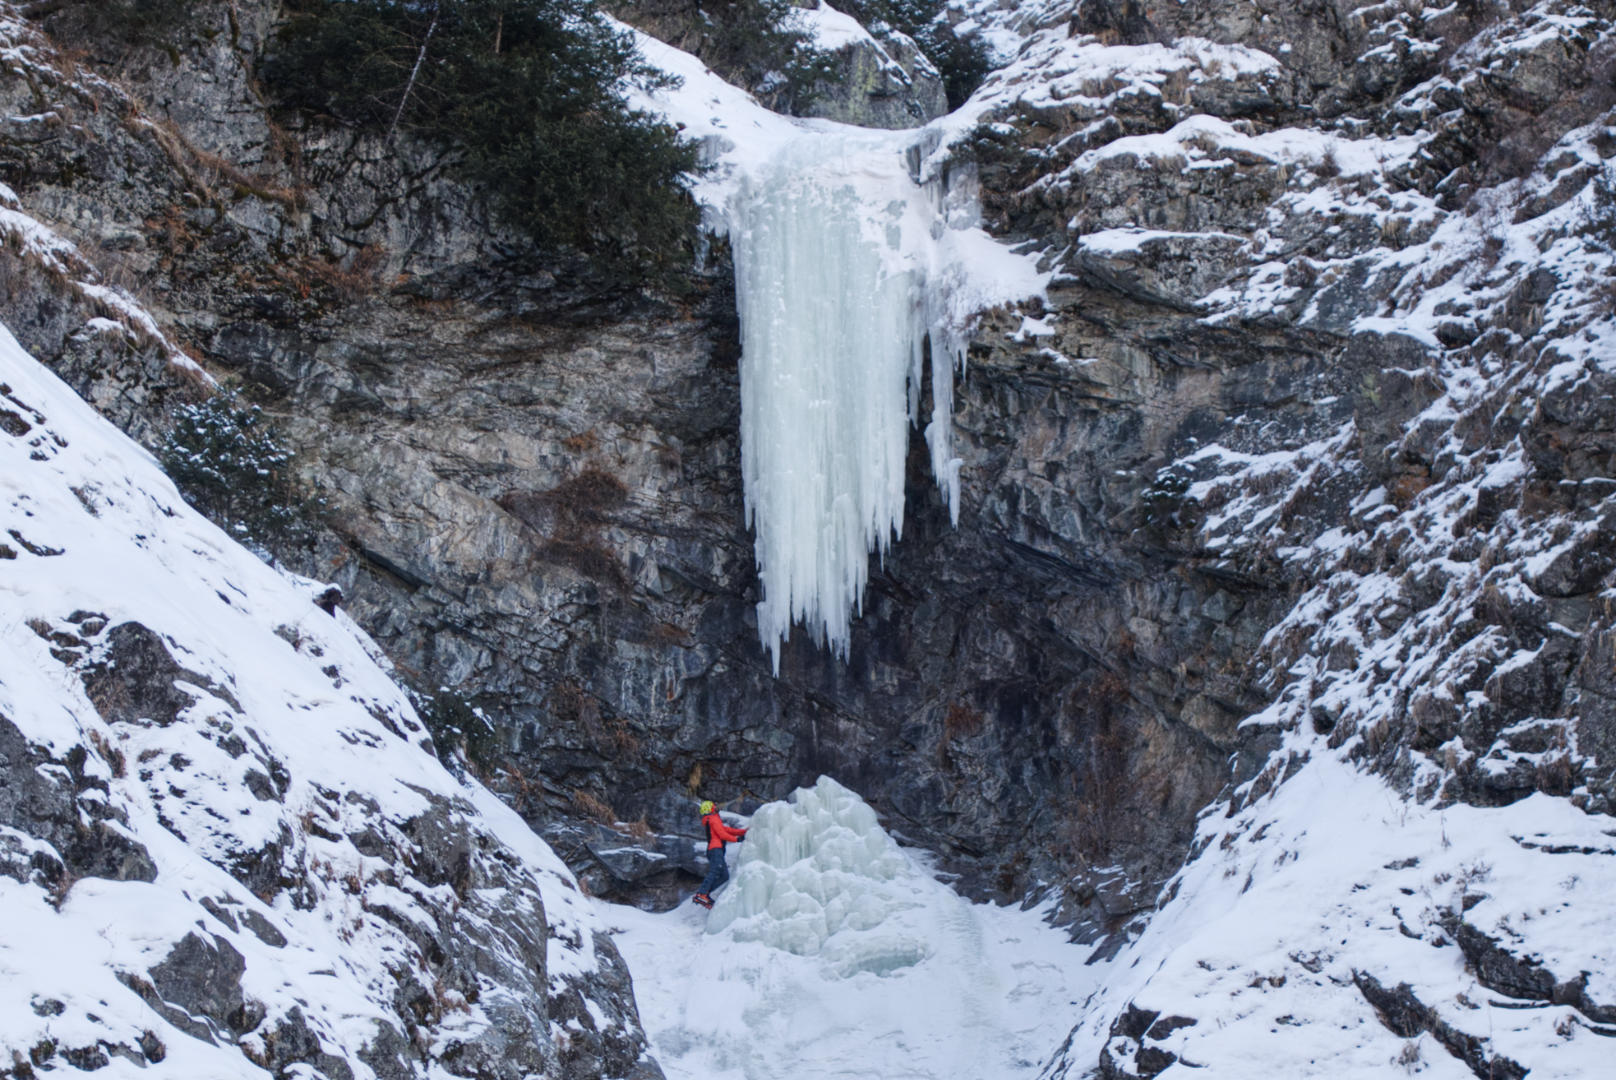 Kirill Belotserkovskiy below the hanging icicle, Alatau Guide